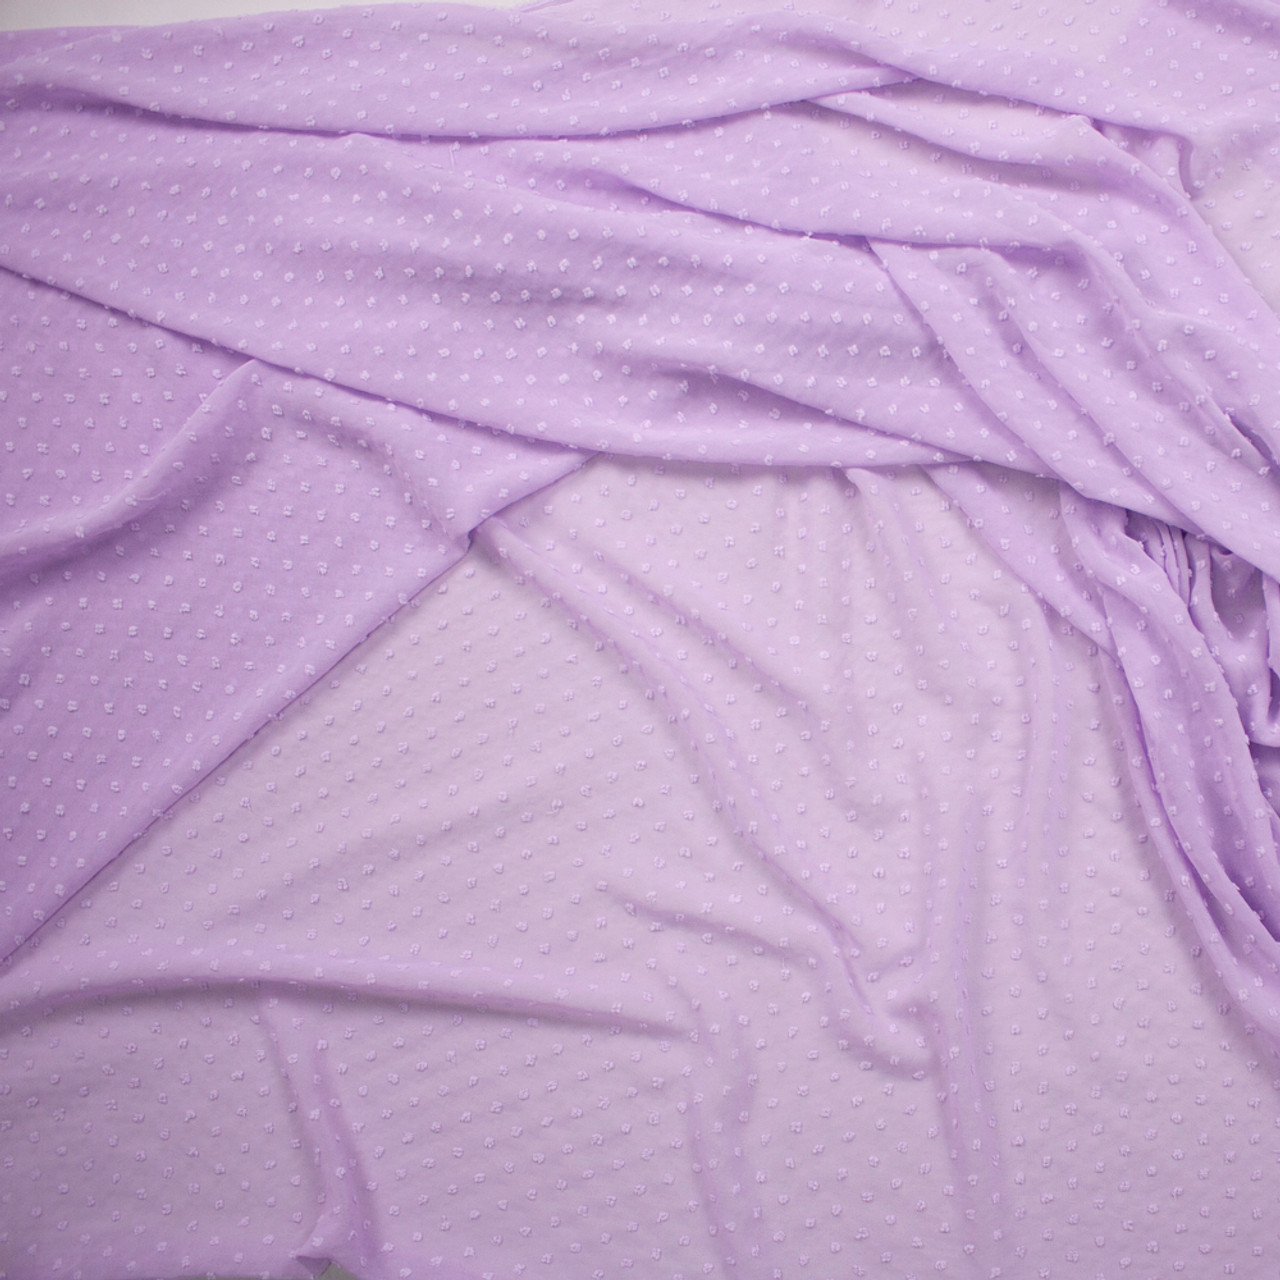 Purple Chiffon Fabric